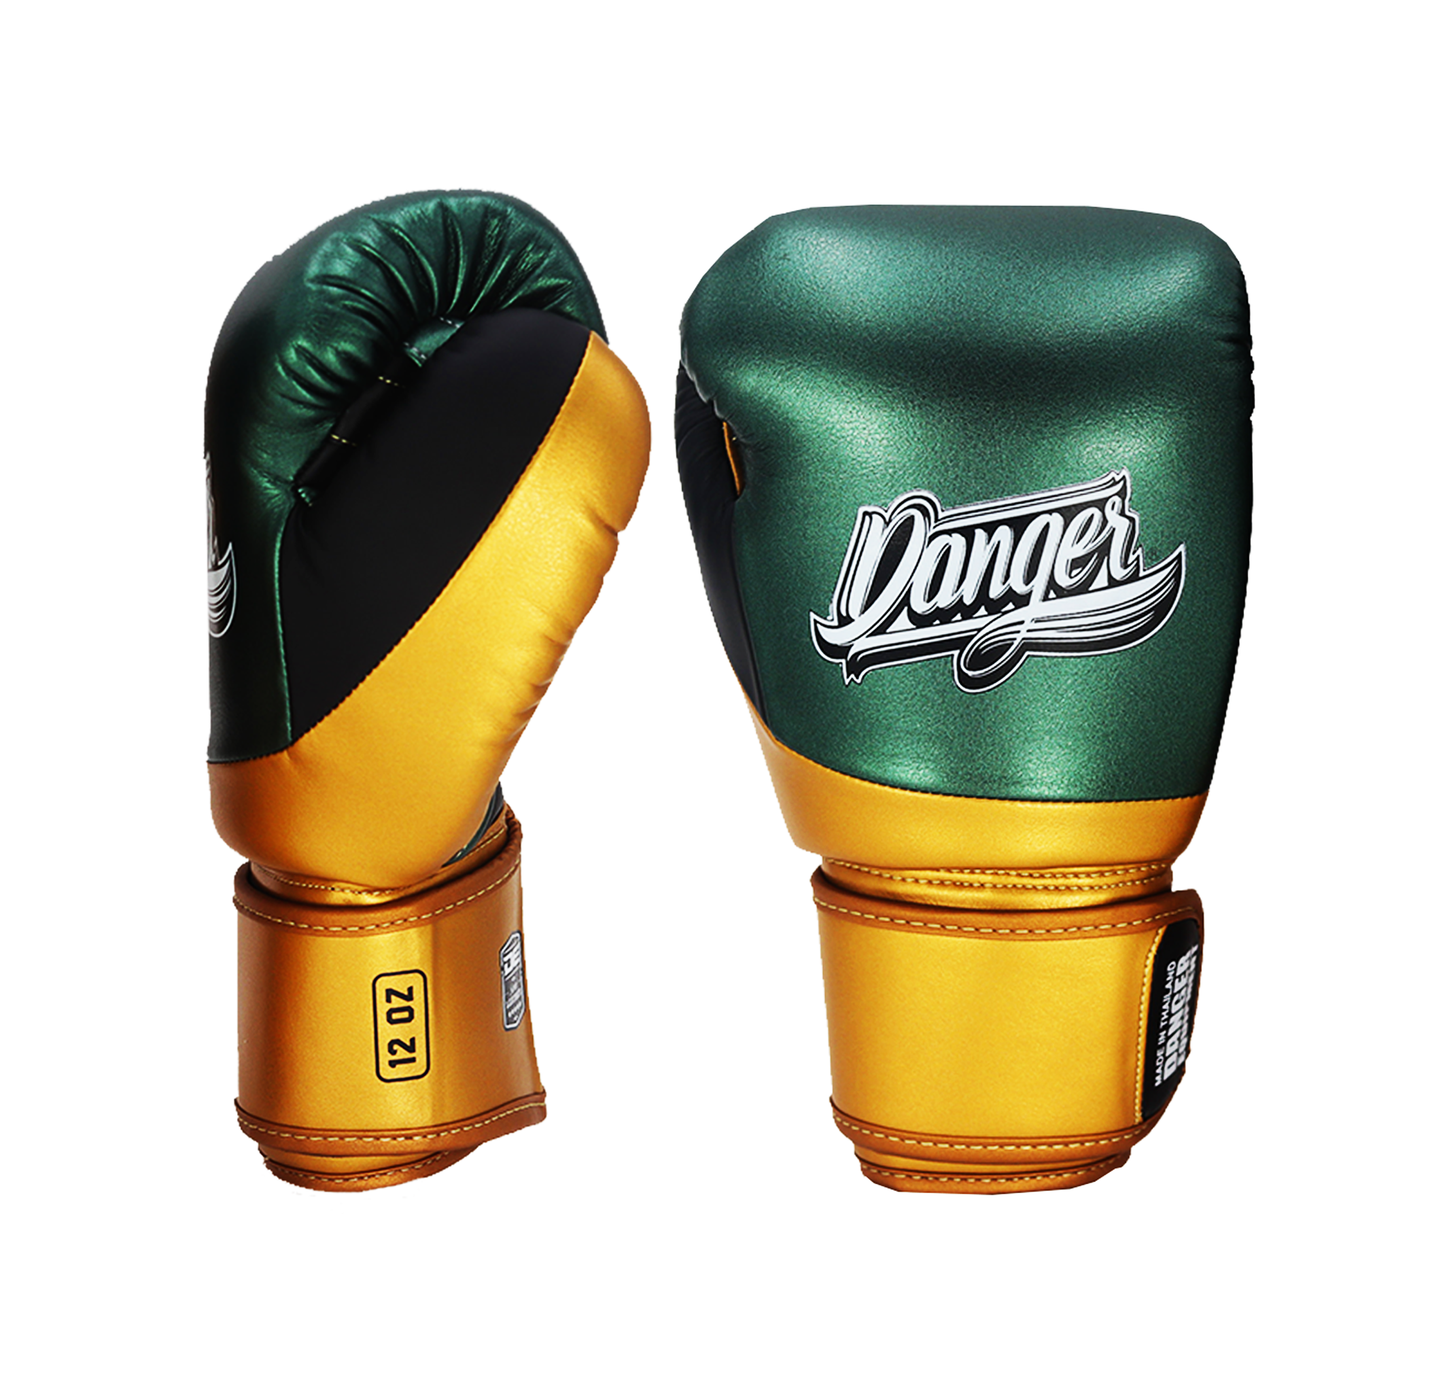 DANGER Boxing Gloves Evo 3.0 Green/Gold/Black